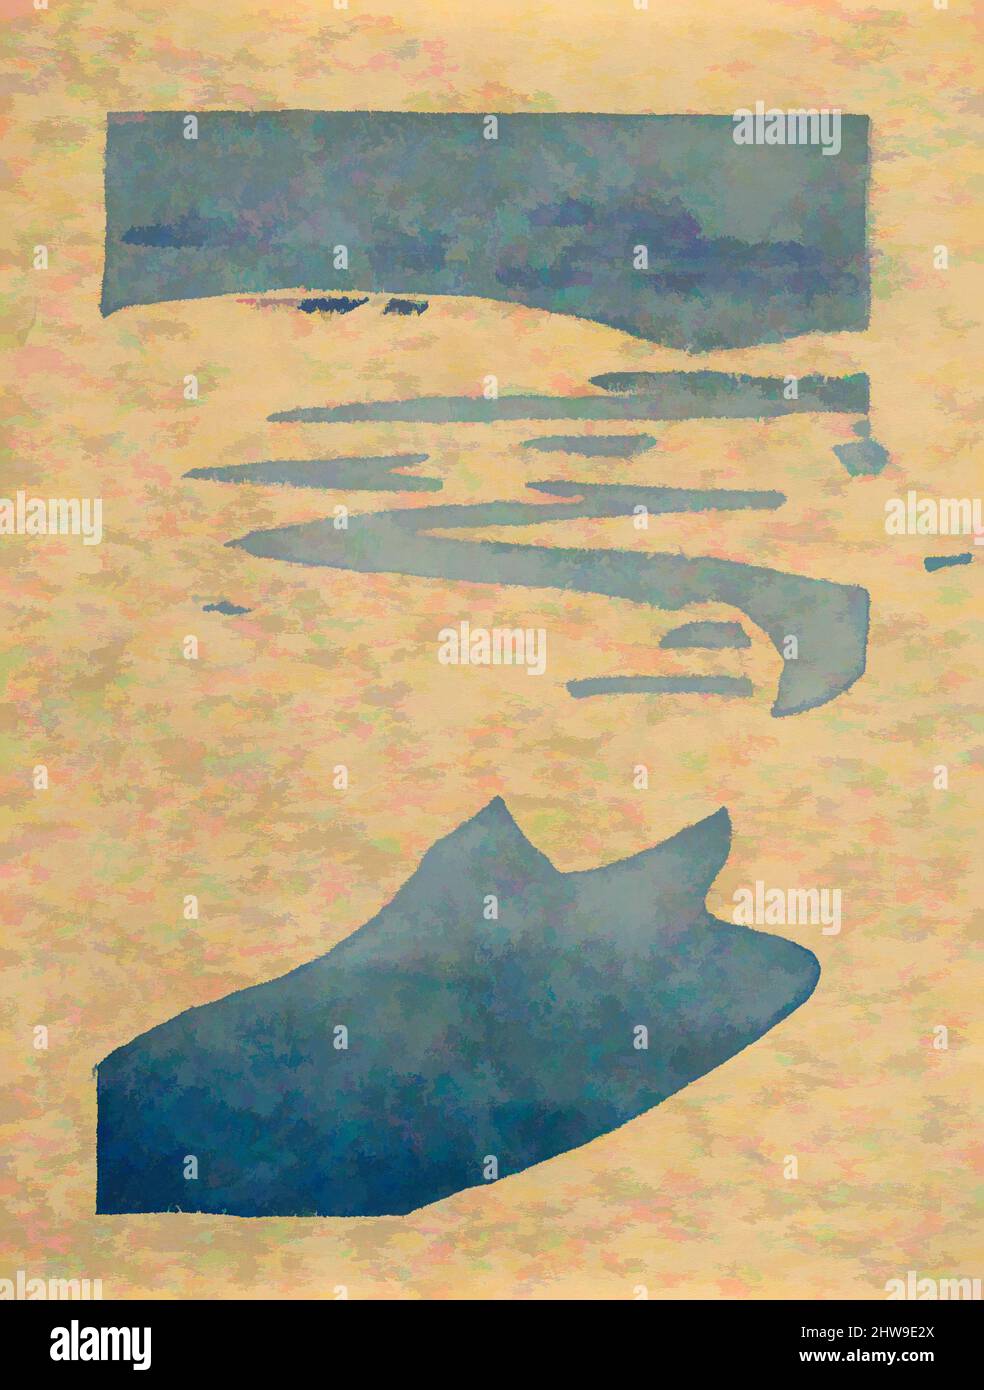 Art Inspired by the Derelict' o 'The Lost Boat', 1916, (nessuno assegnato) Ipswich, Massachusetts, Stati Uniti, Legno a colori; prova di prova di blocco a colore singolo, immagine: 5 5/8 x 3 7/8 pollici (14,3 x 9,8 cm), Prints, Arthur Wesley Dow (American, Ipswich, Massachusetts 1857–1922 New York, opere classiche modernizzate da Artotop con un tuffo di modernità. Forme, colore e valore, impatto visivo accattivante sulle emozioni artistiche attraverso la libertà delle opere d'arte in modo contemporaneo. Un messaggio senza tempo che persegue una nuova direzione selvaggiamente creativa. Artisti che si rivolgono al supporto digitale e creano l'NFT Artotop Foto Stock